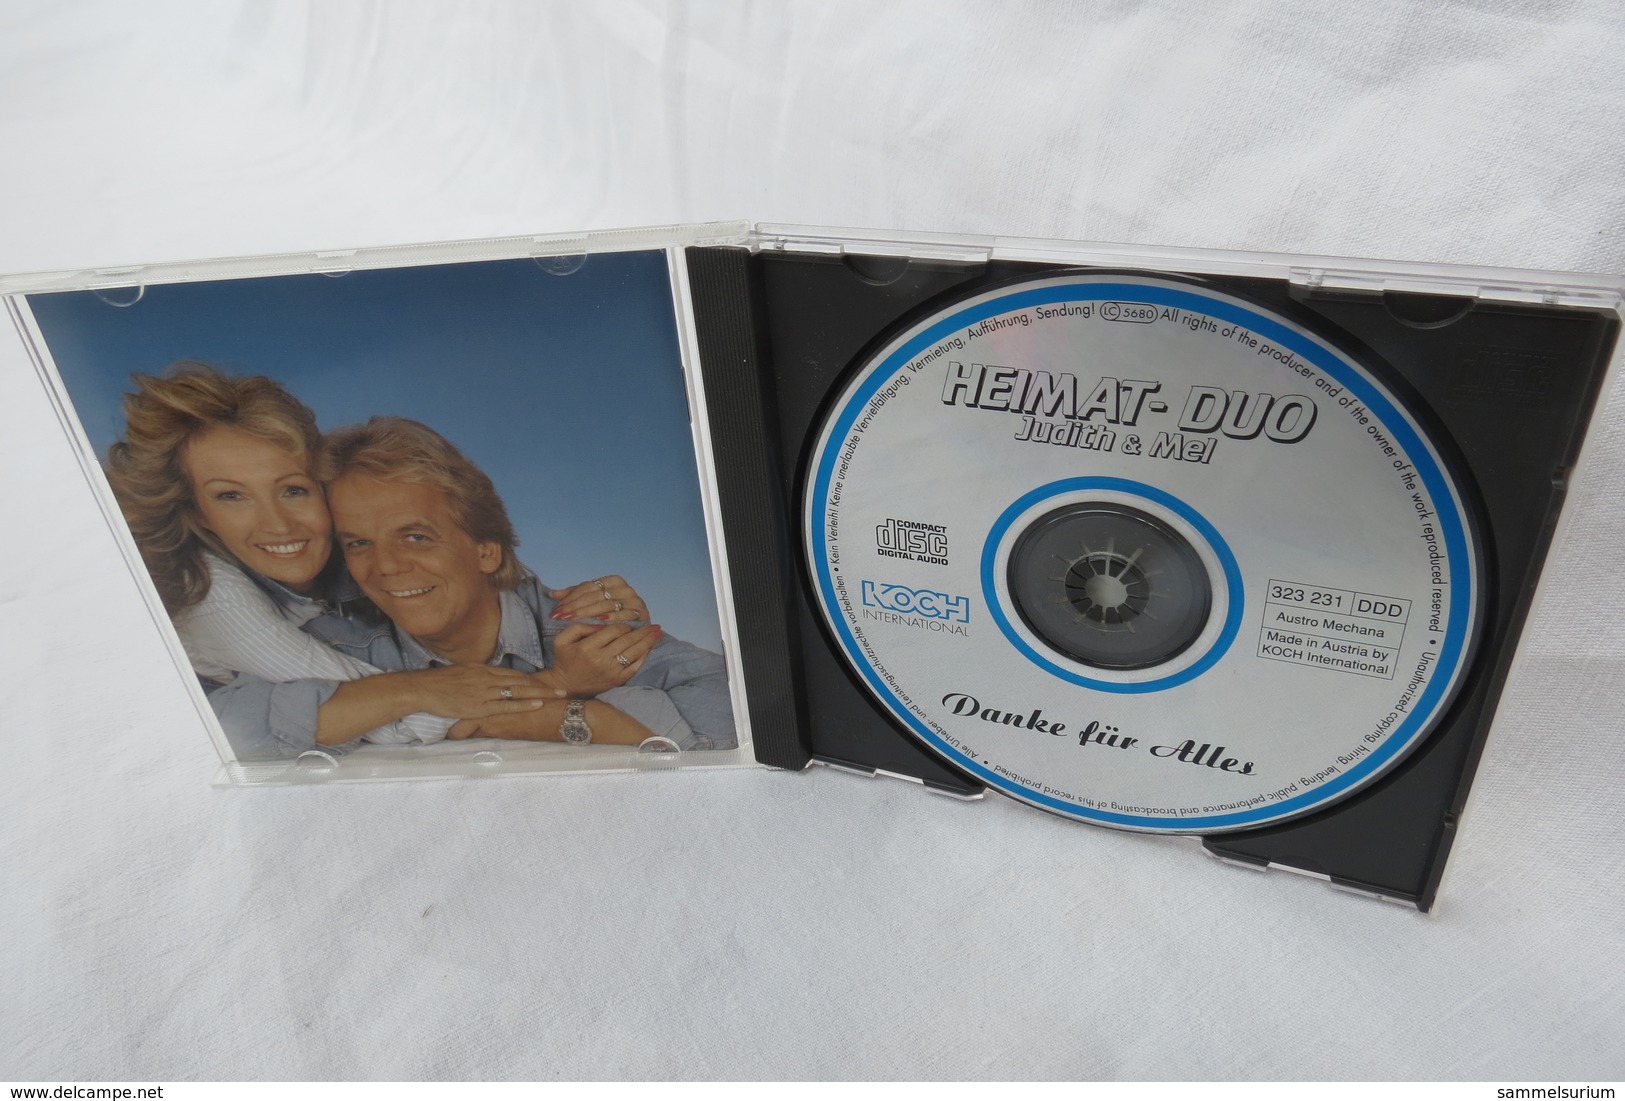 CD "Heimat-Duo Judith & Mel" Grand Prix Der Volksmusik, Danke Für Alles - Otros - Canción Alemana